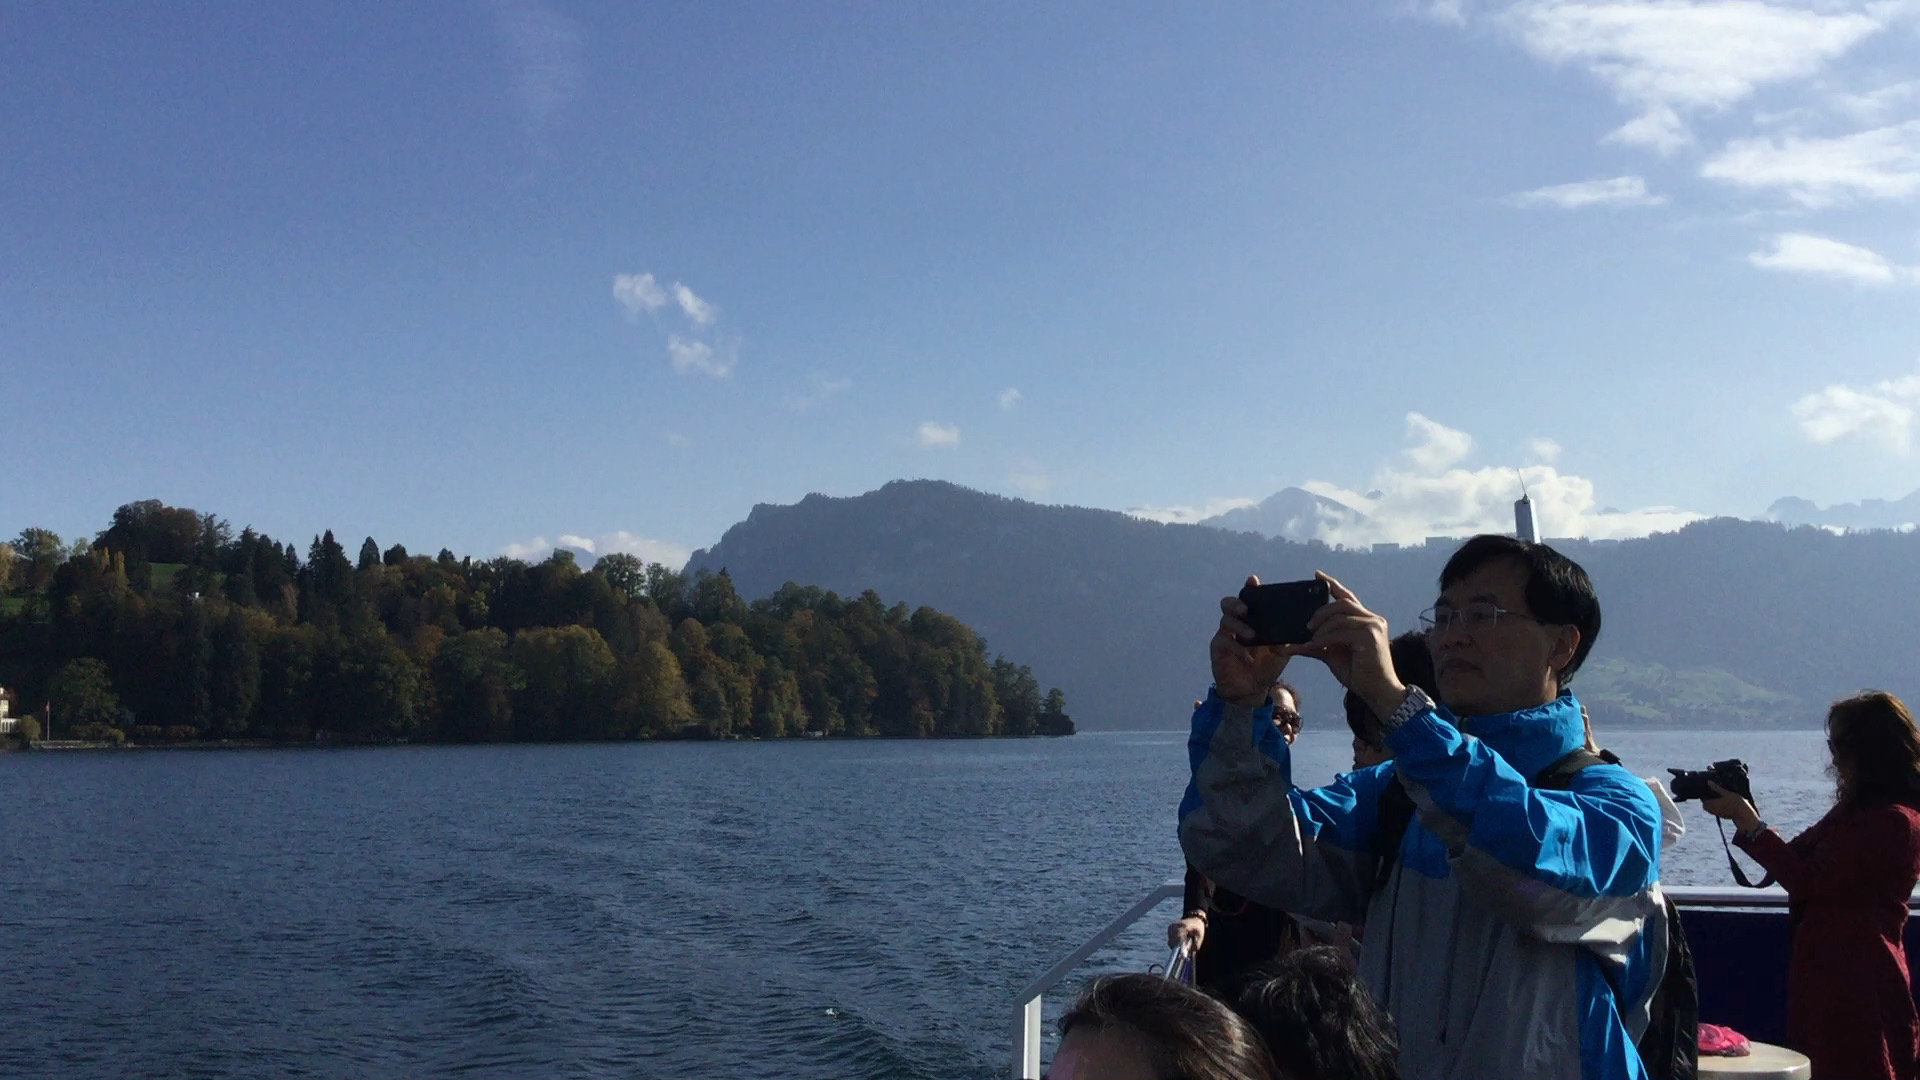 瑞士卢塞恩湖坐游船游览观光美景。